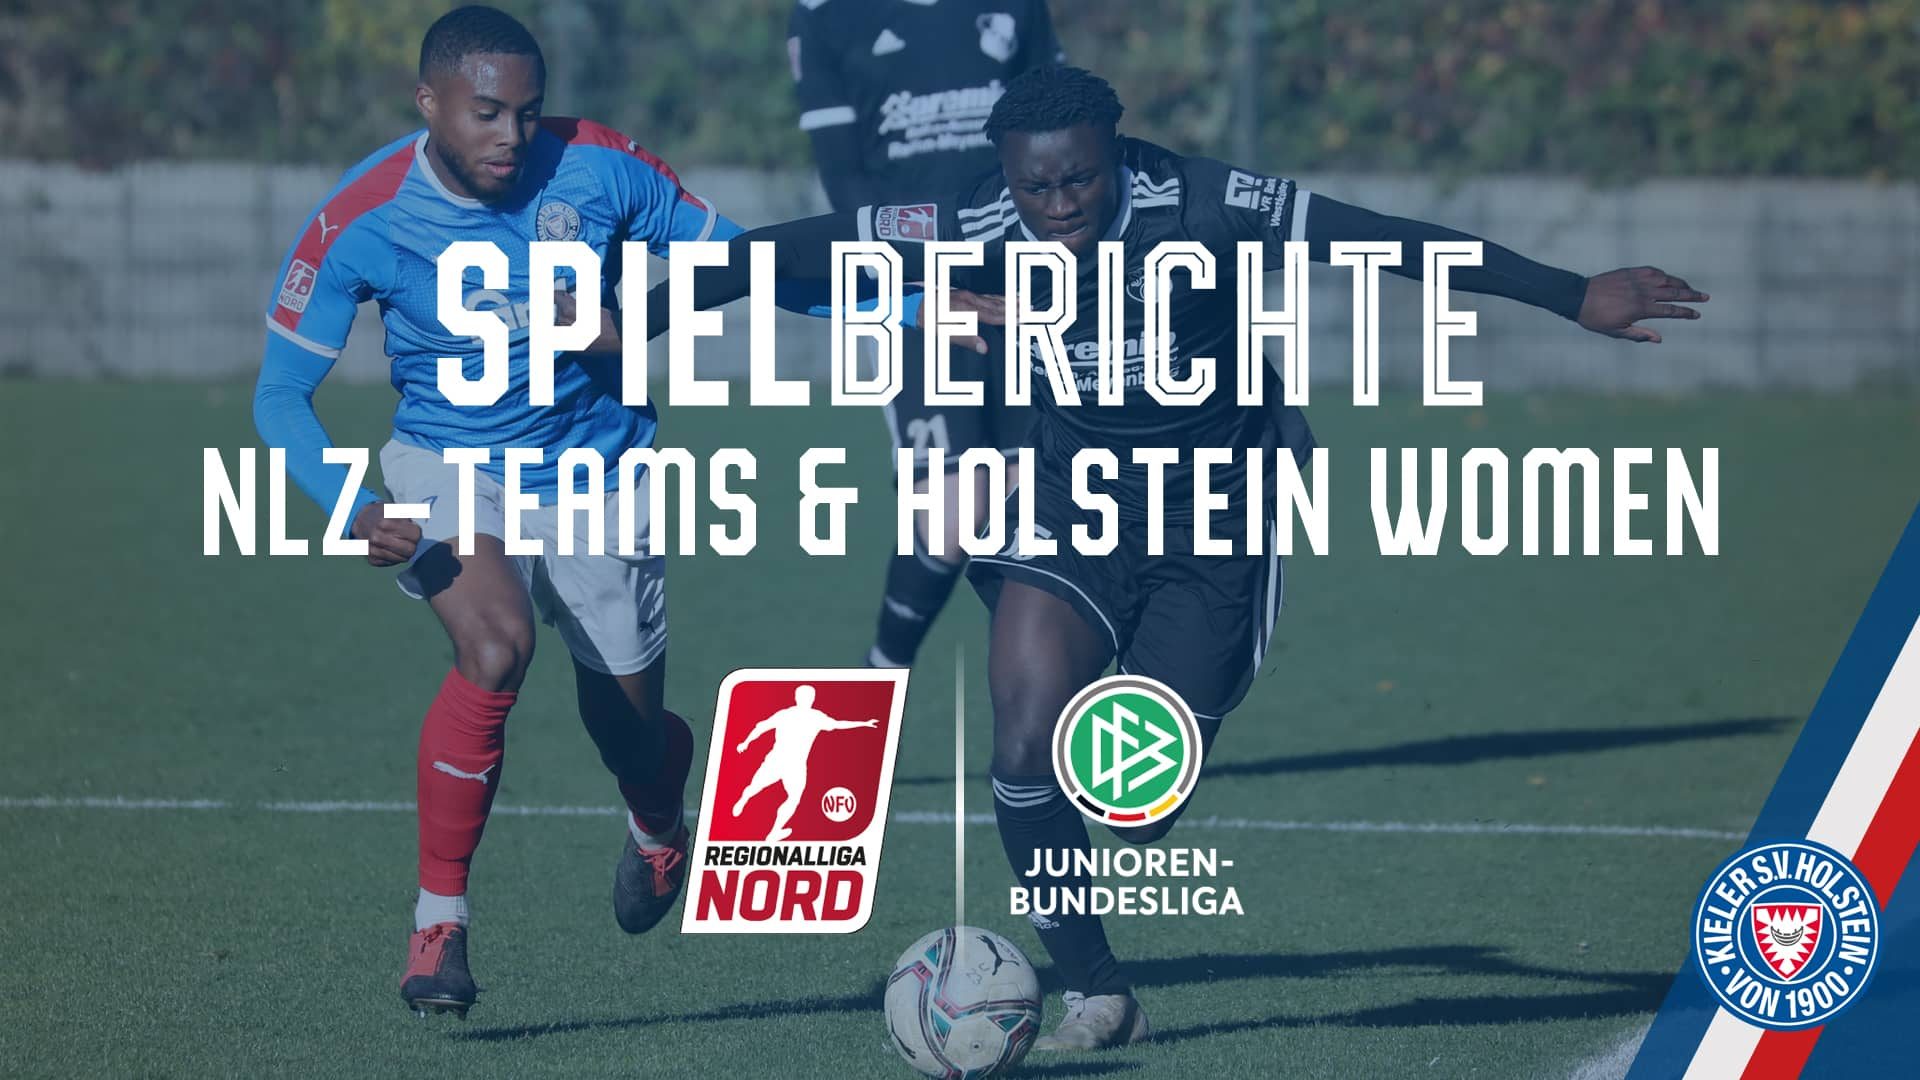 Spielbericht_Facebook U23 - Heide Dresden - U19 Women - Osnabrücker SC